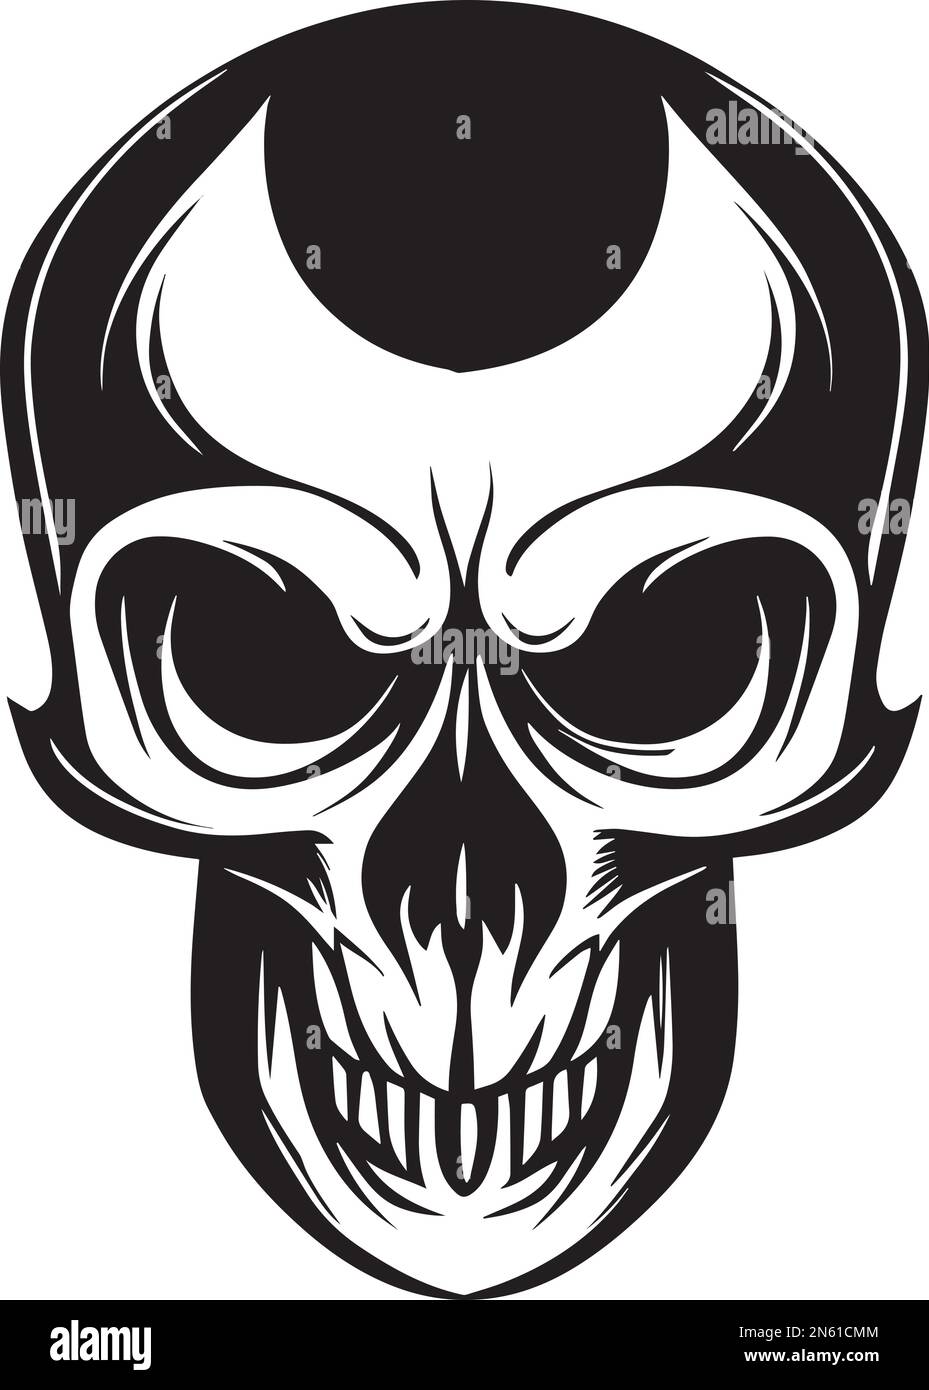 Illustration Of Skull Monochrome Logo Design Stock Vector Image & Art ...